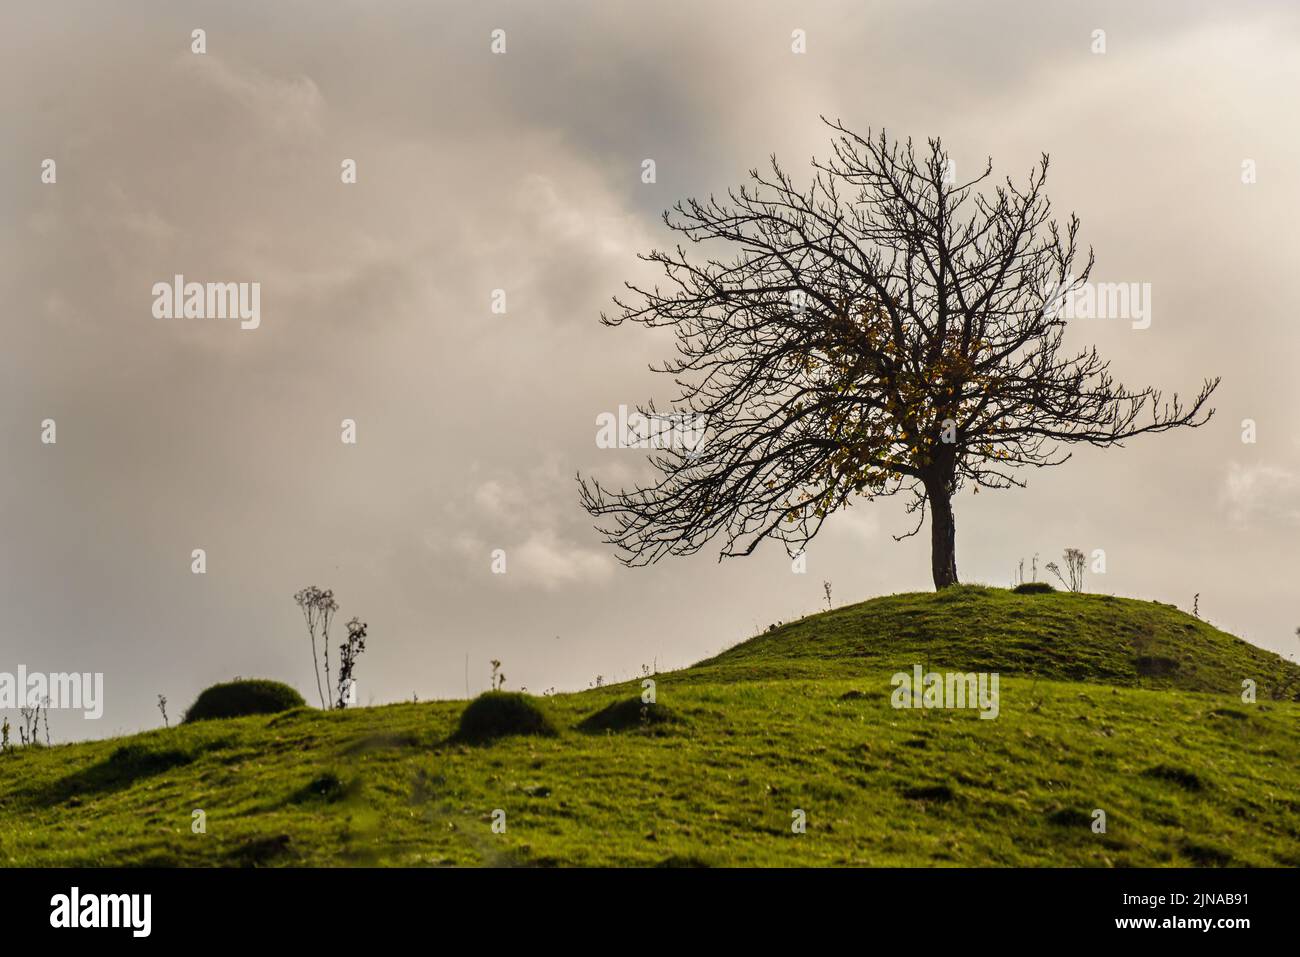 Ein kleiner Baum auf einem grasbewachsenen Hügel, der gegen den Himmel geschildet wurde Stockfoto